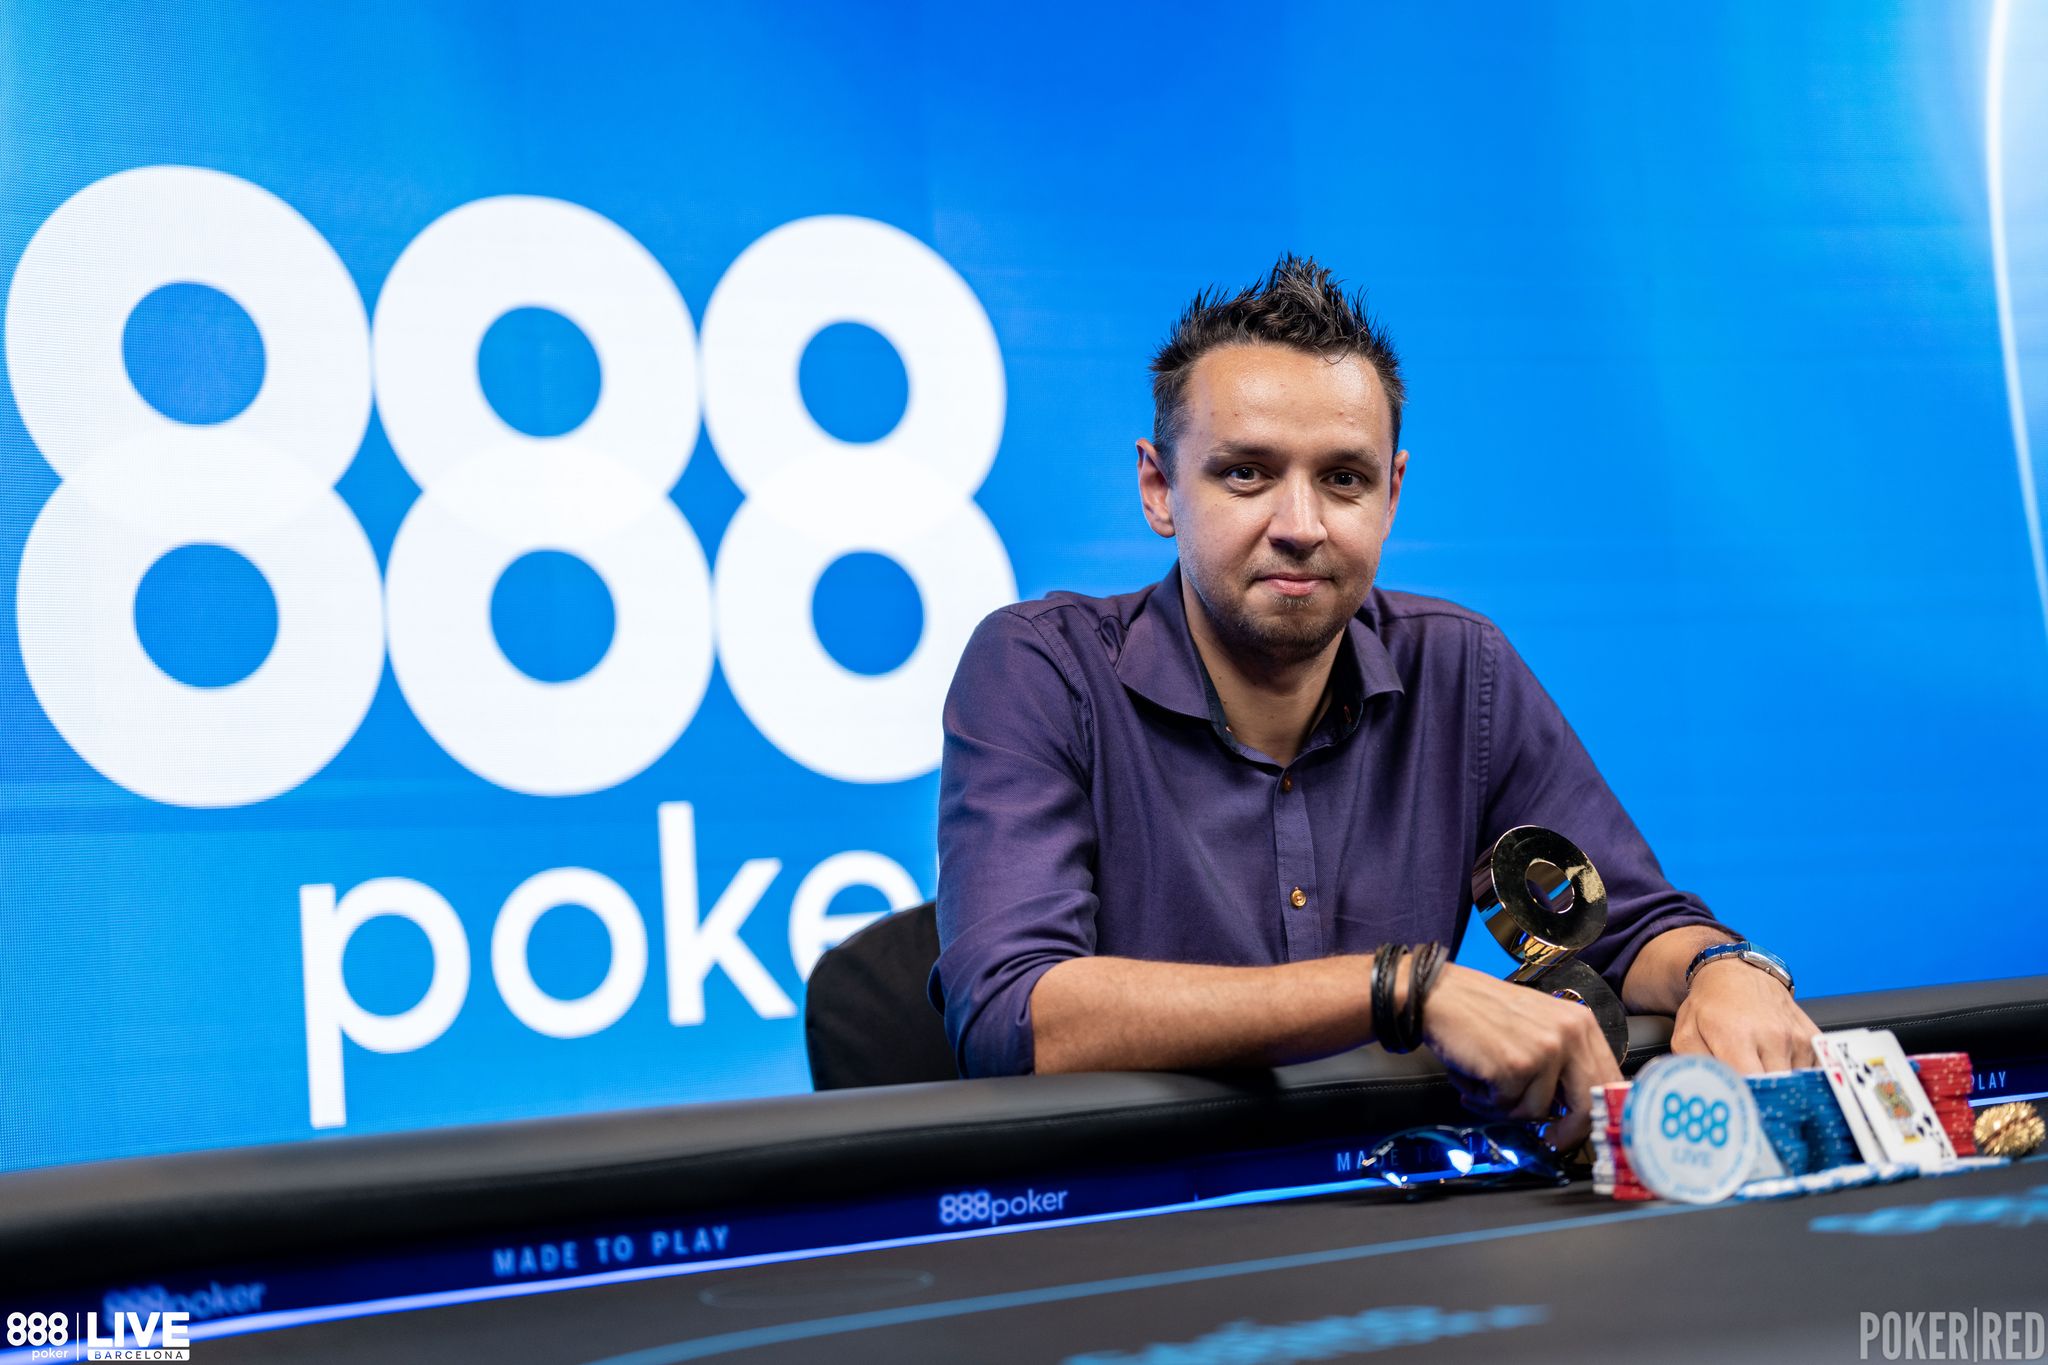 Tero Laurila, campeón del Main Event del 888poker LIVE Barcelona